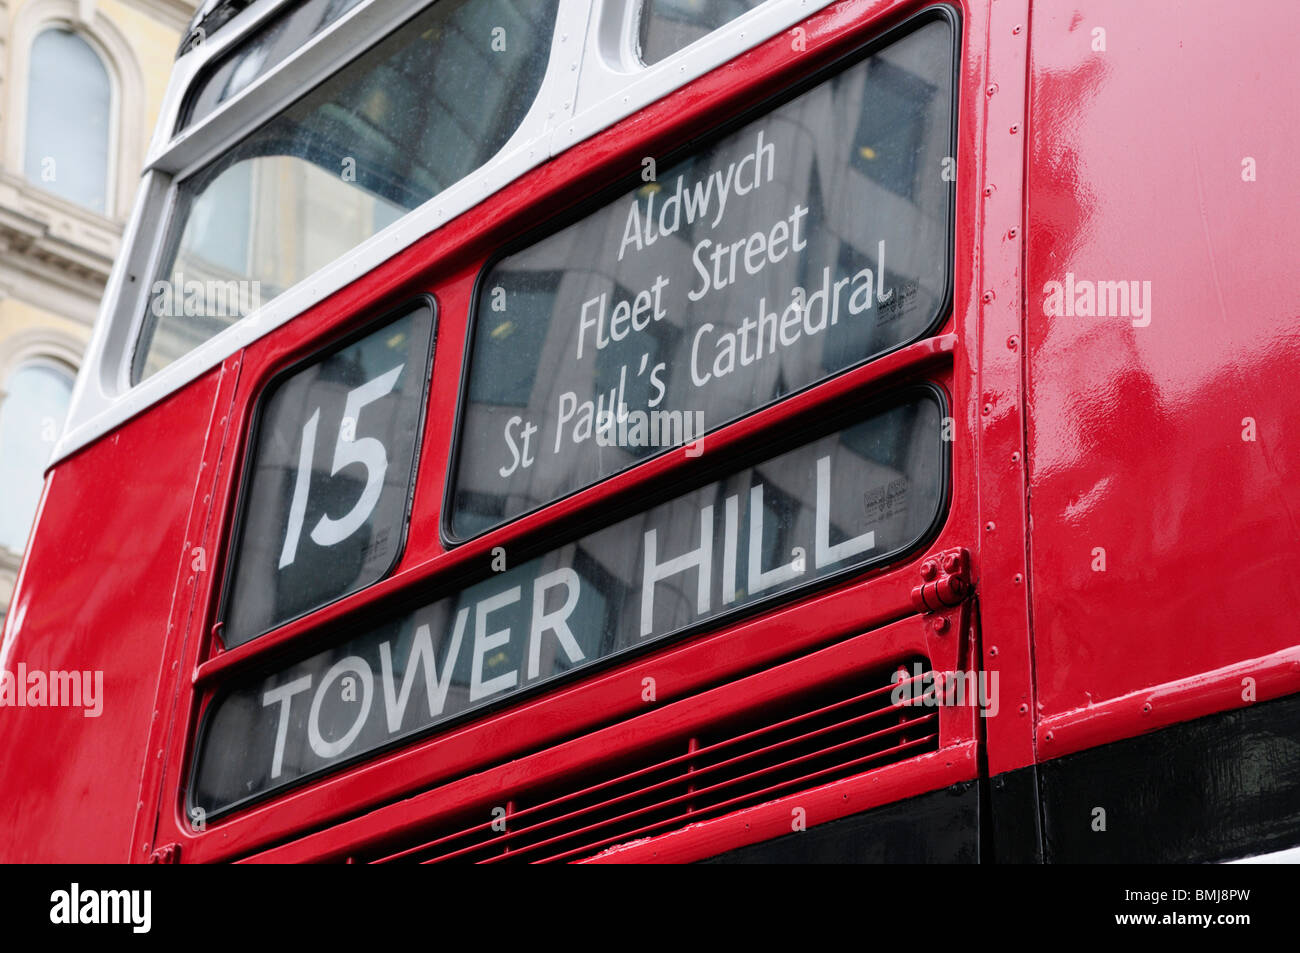 Un vieux Routemaster Bus Londres patrimoine sur la route 15 entre Trafalgar Square et de Tower Hill, London England UK Banque D'Images